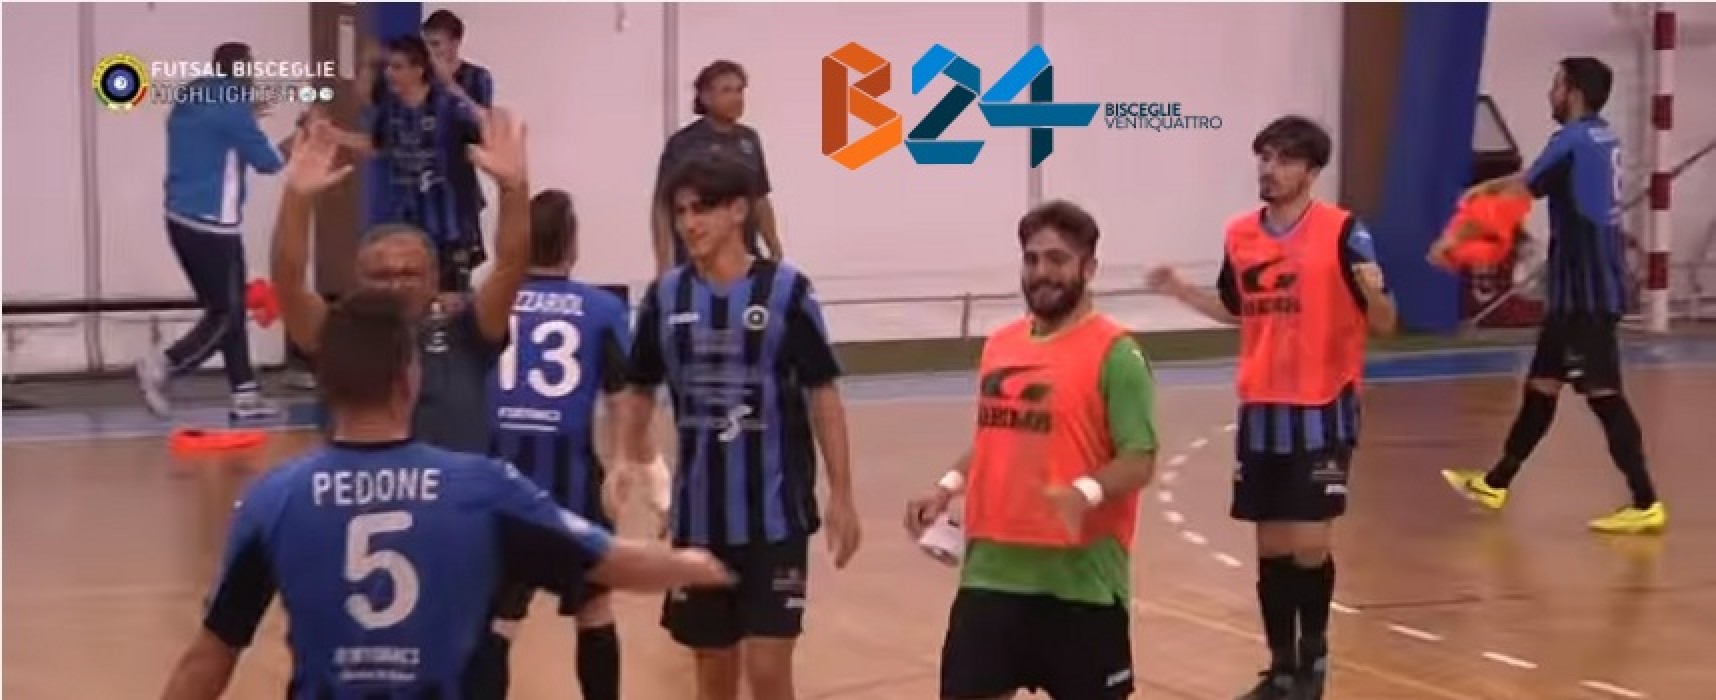 Olimpus Olgiata-Futsal Bisceglie 2-4/VIDEO HIGHLIGHTS